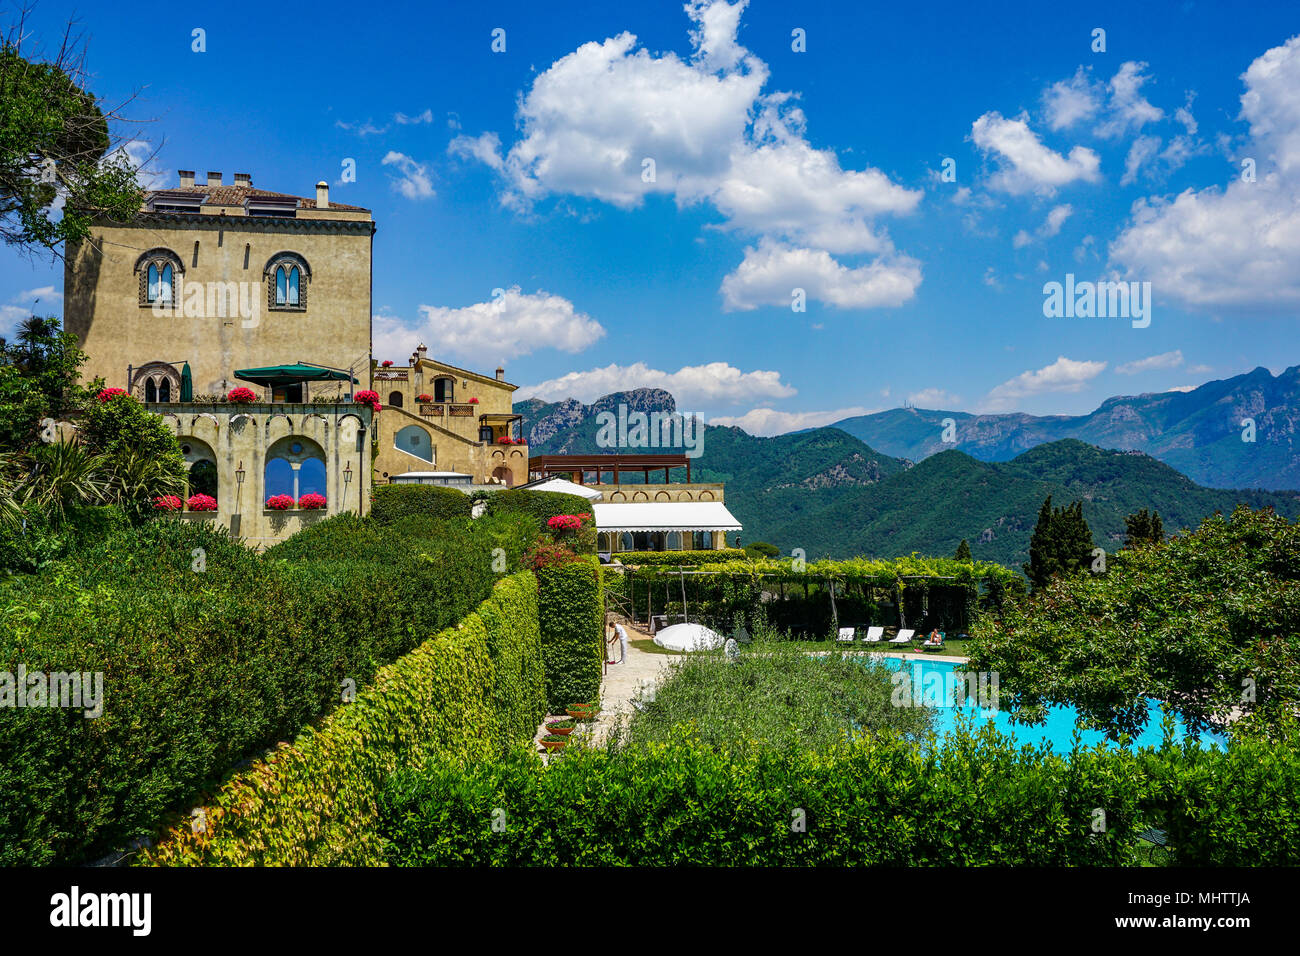 Grounds of Villa Cimbrone in Ravello, Amalfi Coast, Italy Stock Photo